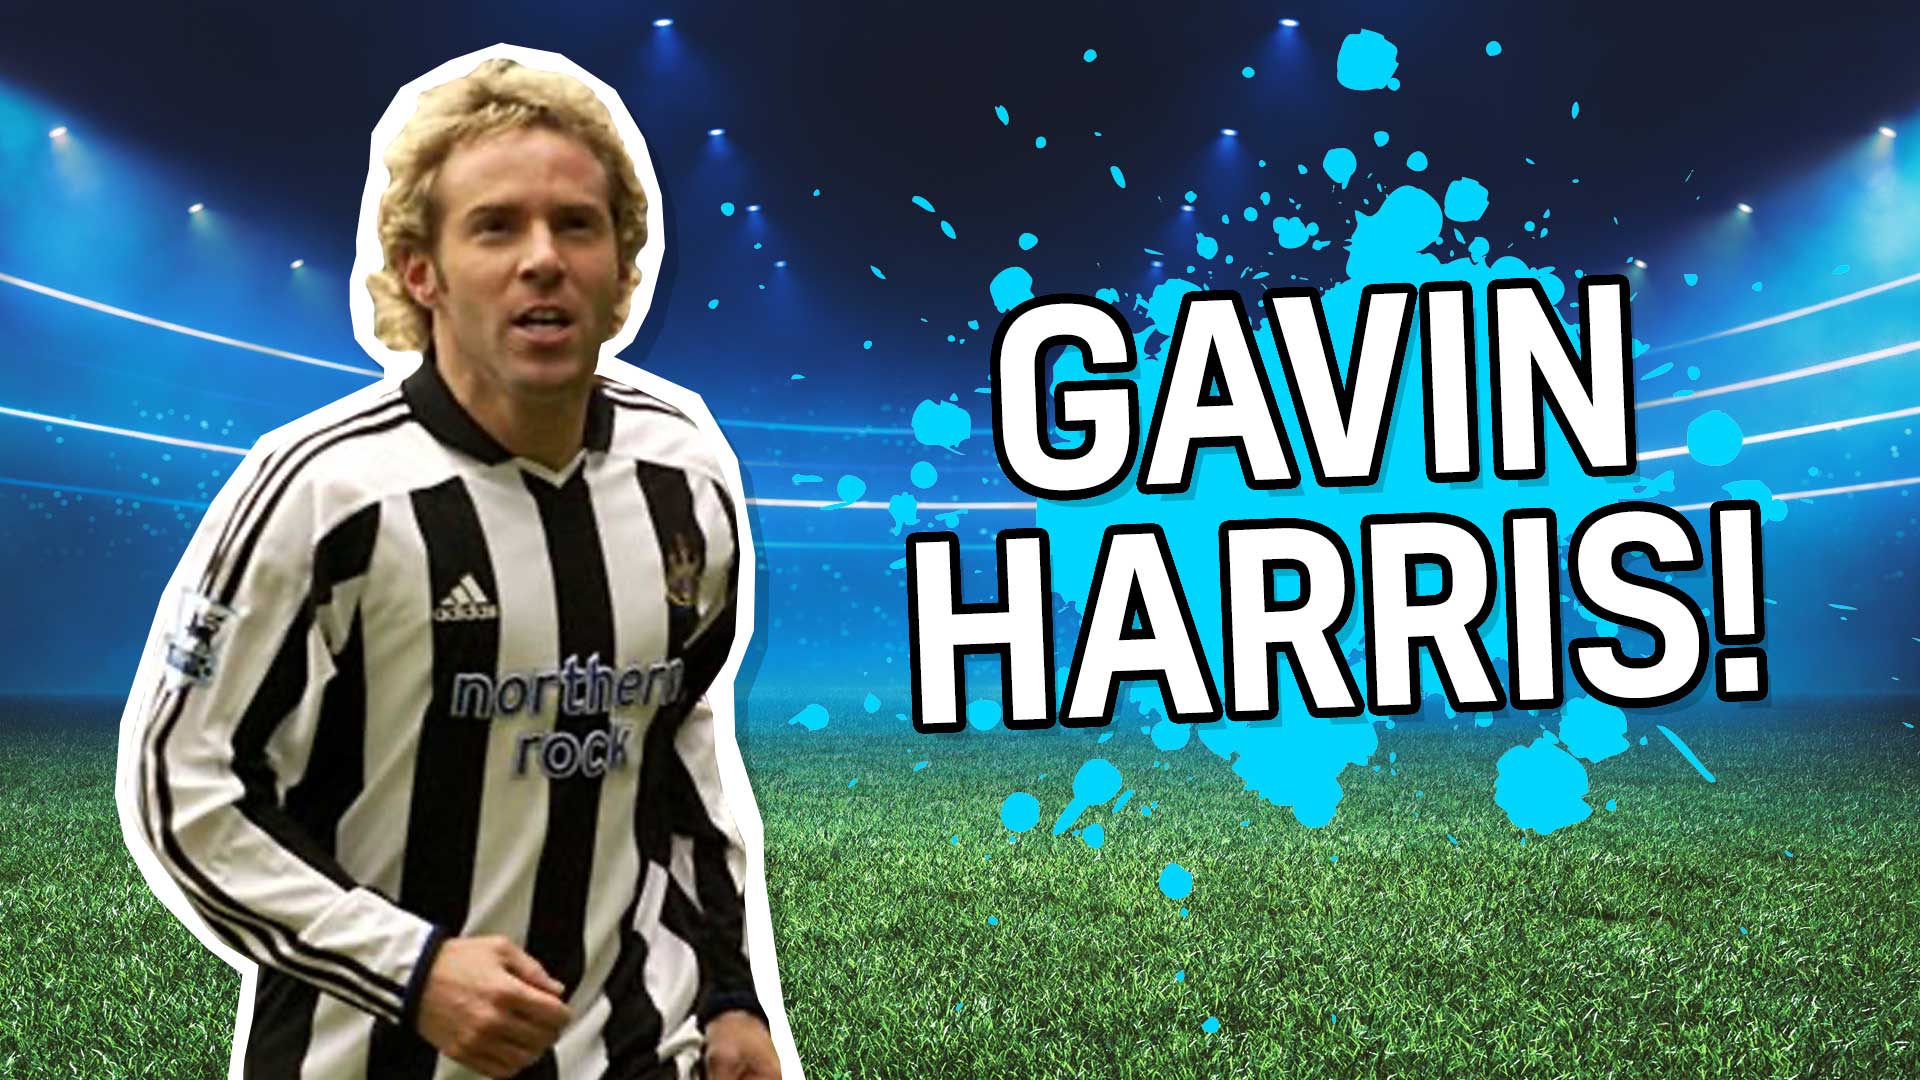 Result: Gavin Harris!